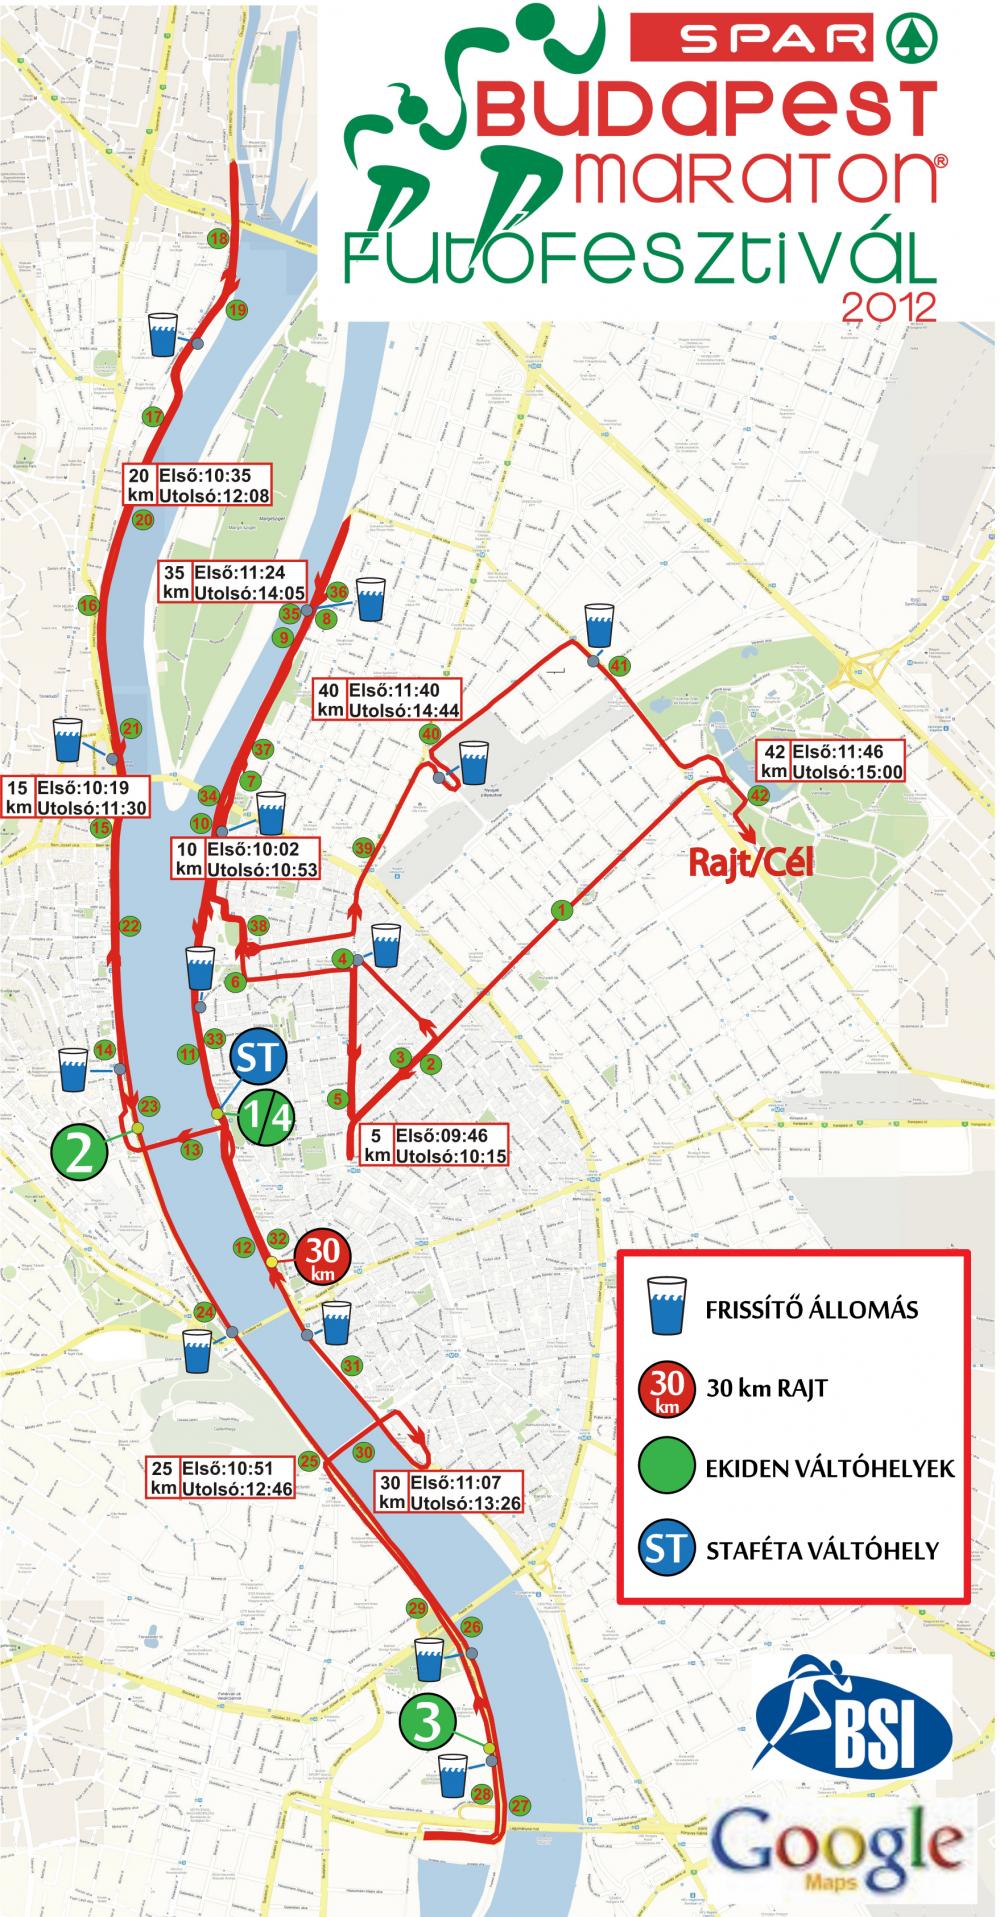 bp térkép útvonal 27. Spar Budapest Maraton   térkép   Futanet.hu bp térkép útvonal